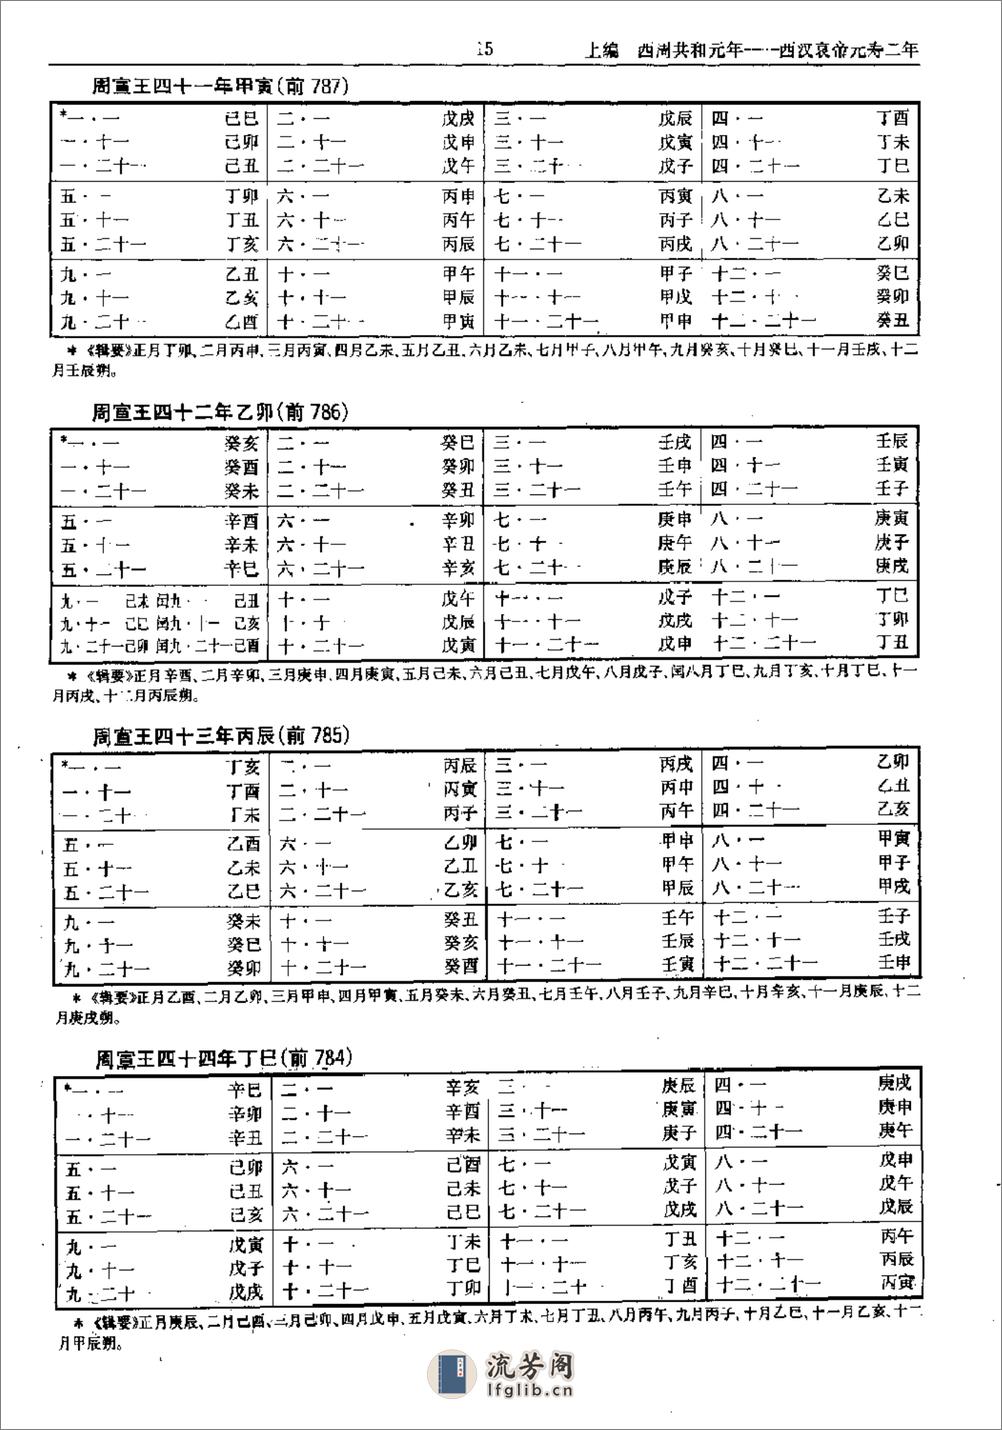 中国史历日和中西历日对照表·方诗铭·上海辞书1 - 第20页预览图